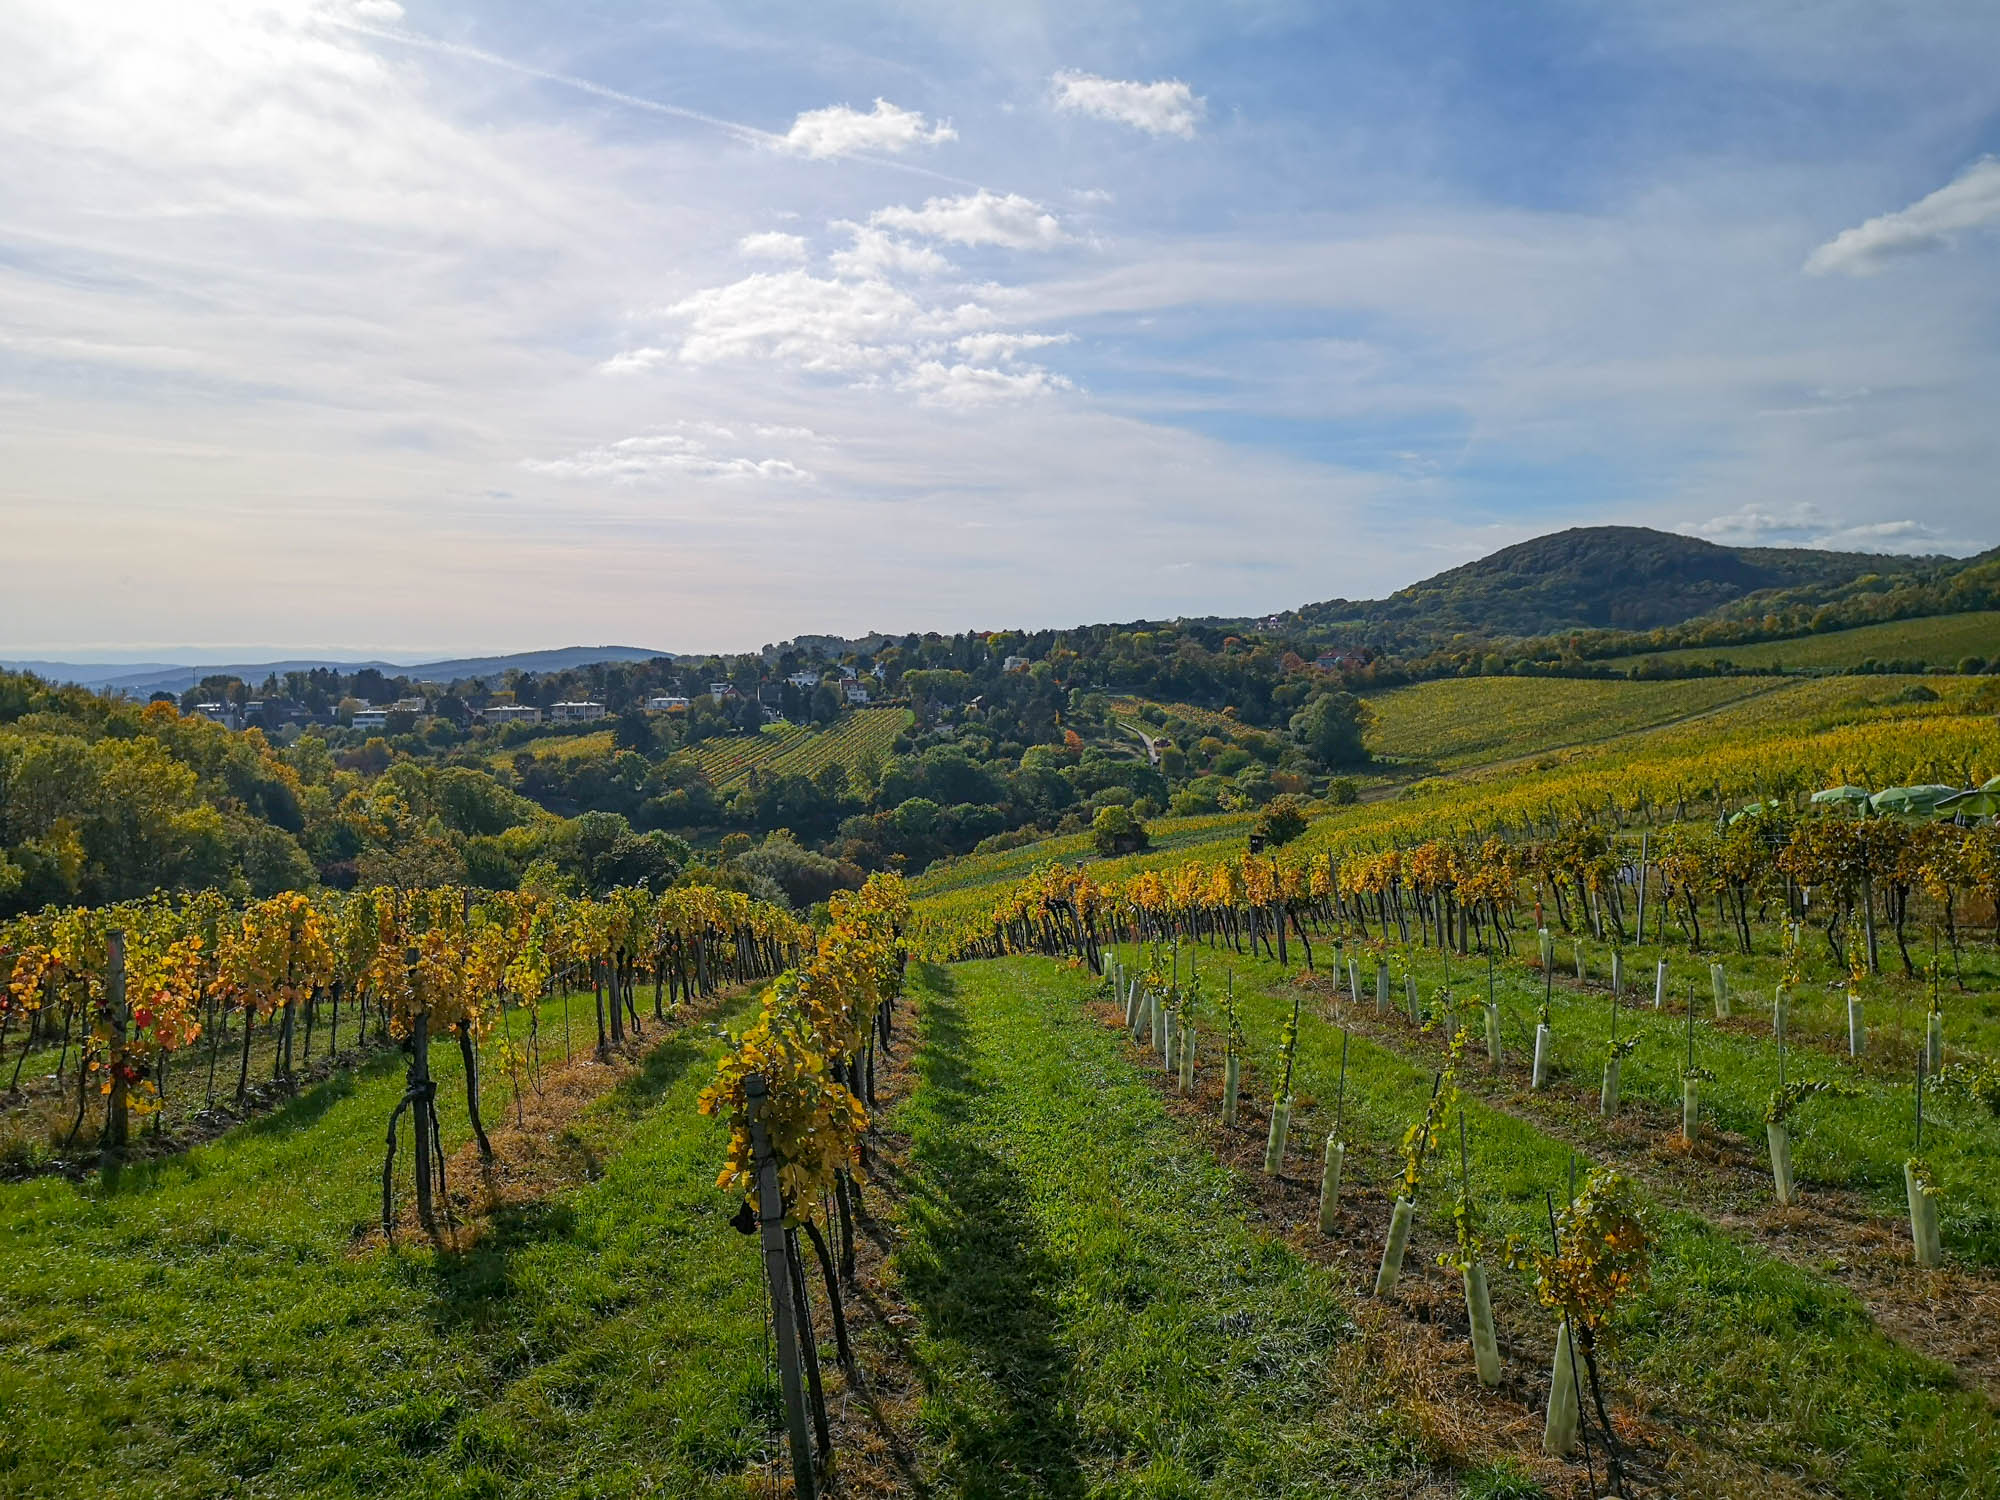 Vienna vineyards in autumn, Austria